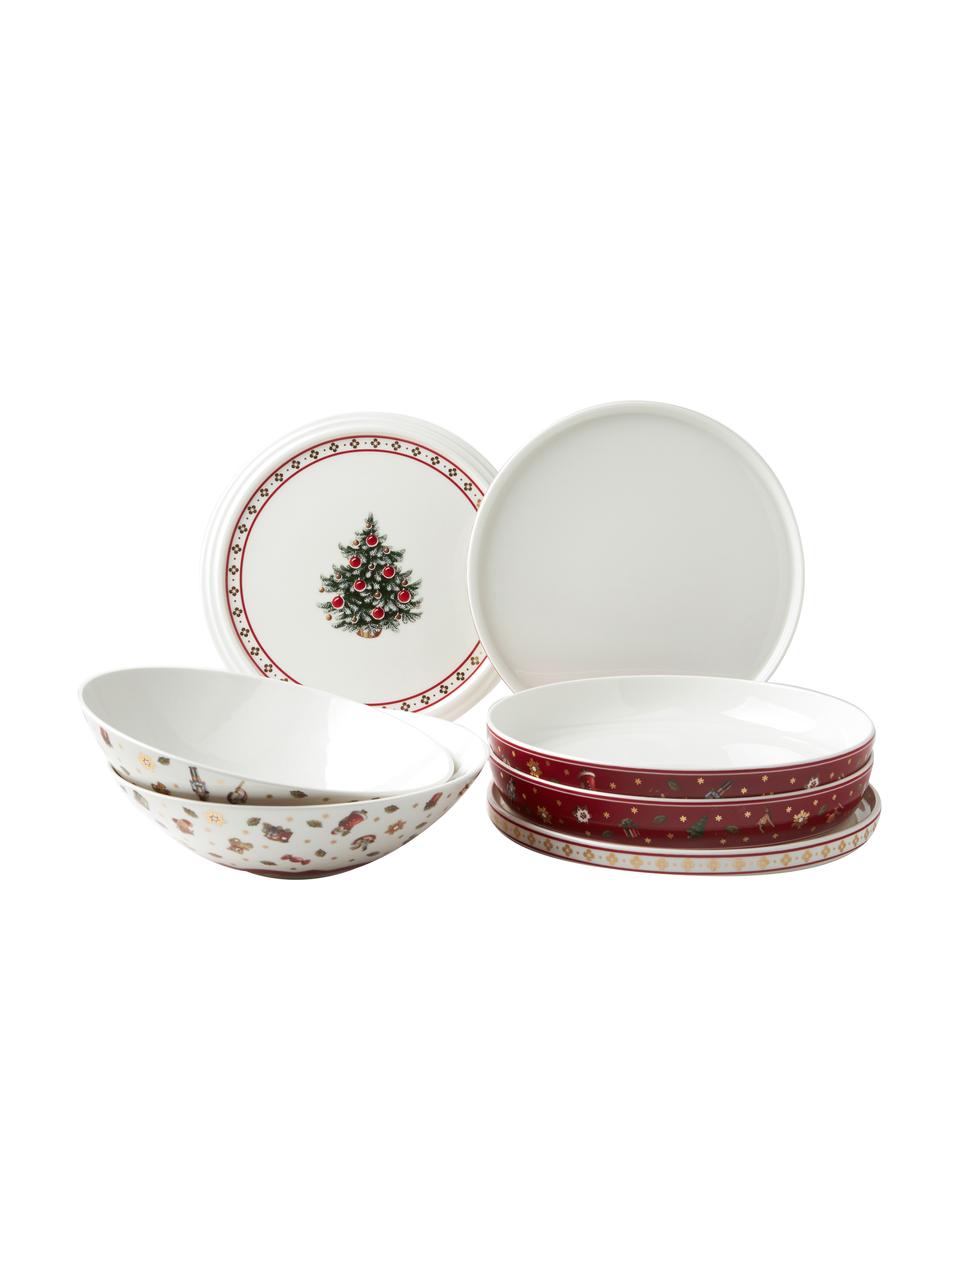 Súprava riadu s vianočným vzorom Delight, 7 dielov, Premium porcelán, Červená, biela, vzorovaná, Súprava s rôznymi veľkosťami